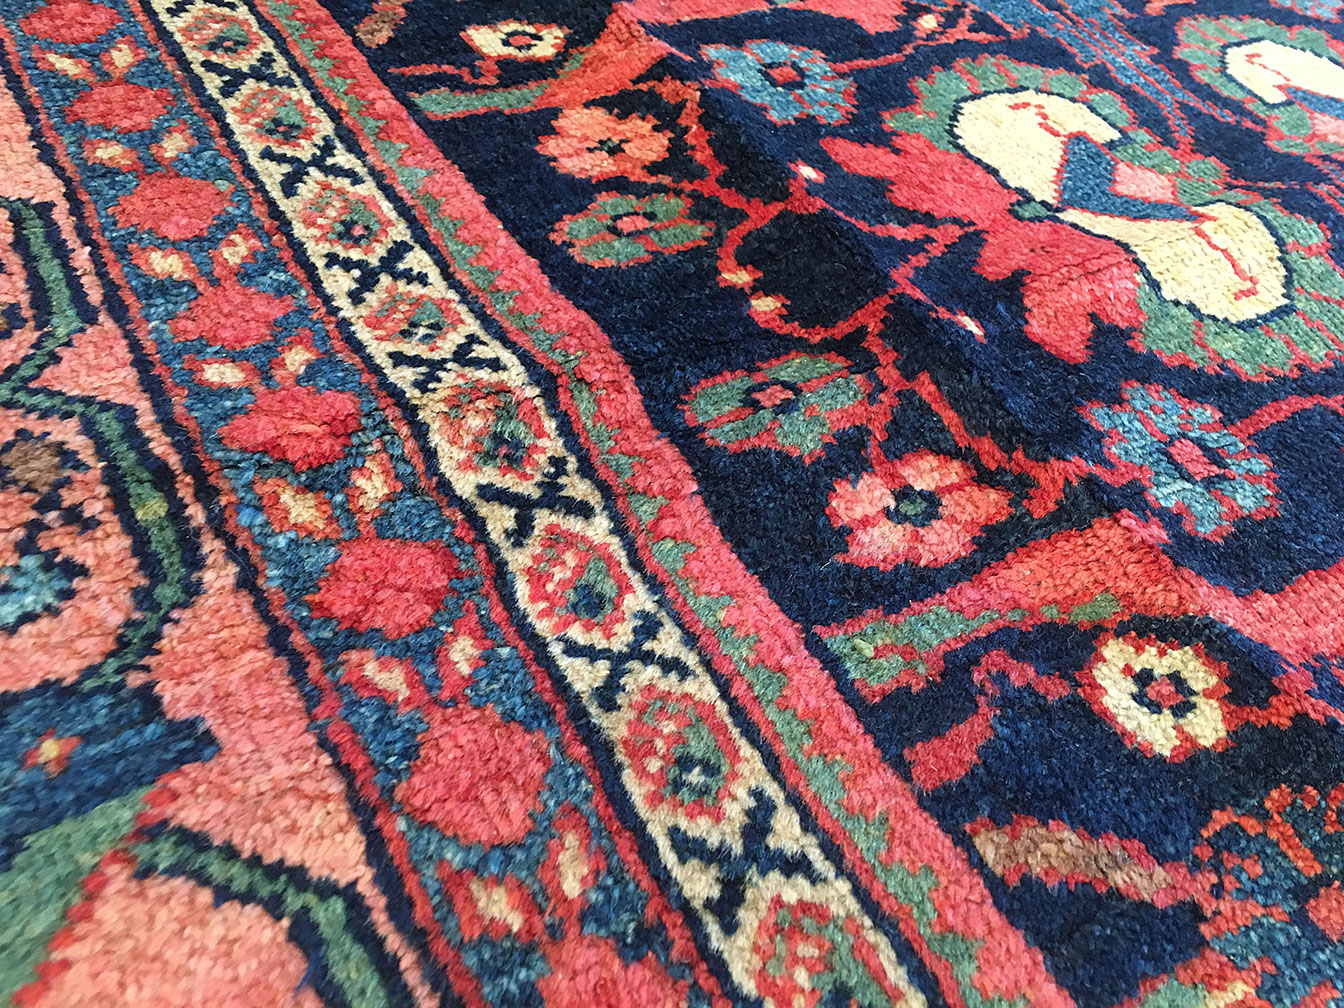 Antique mahal Carpet - # 52665